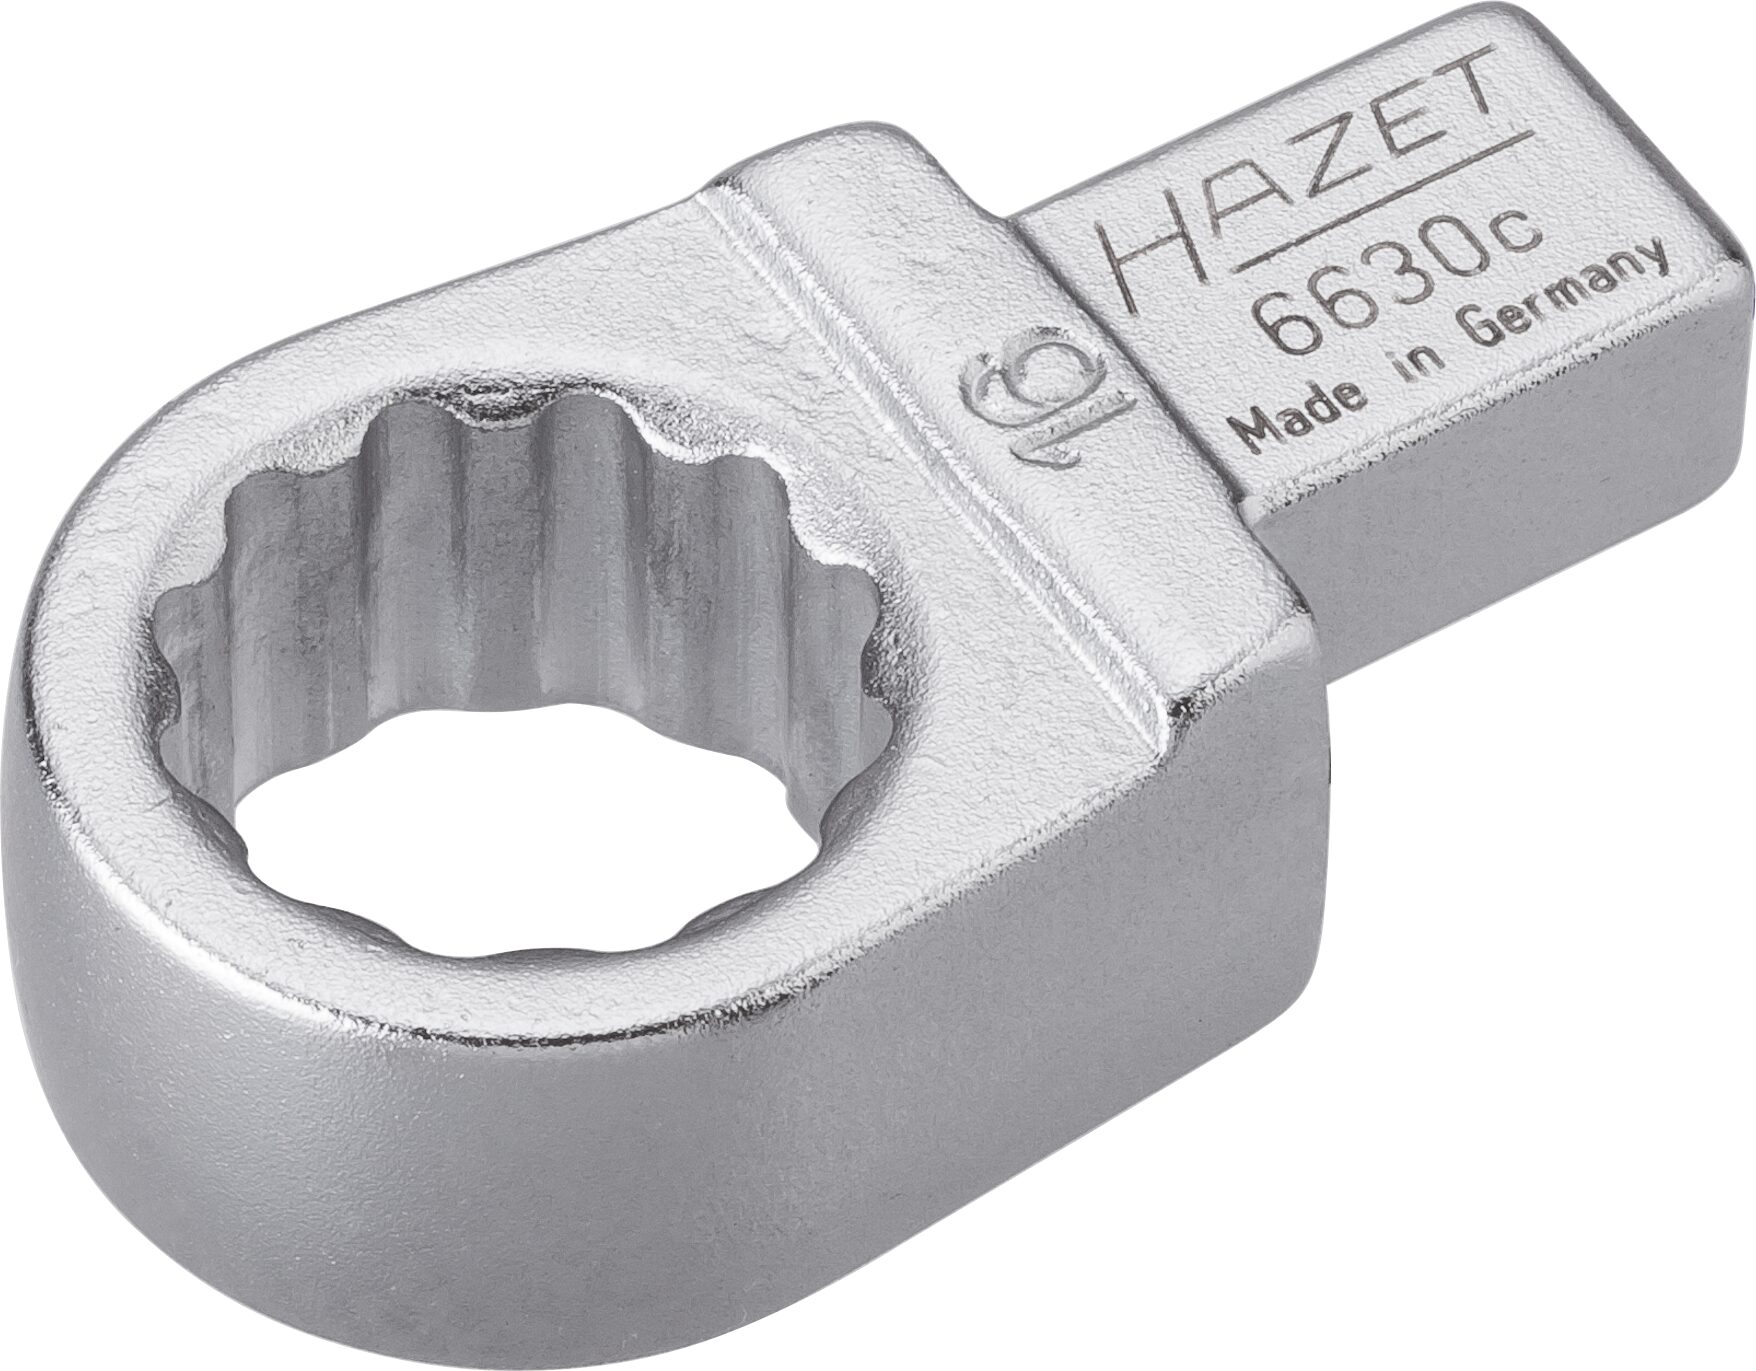 HAZET Einsteck-Ringschlüssel 6630C-16 · Einsteck-Vierkant 9 x 12 mm · Außen Doppel-Sechskant-Tractionsprofil · 16 mm